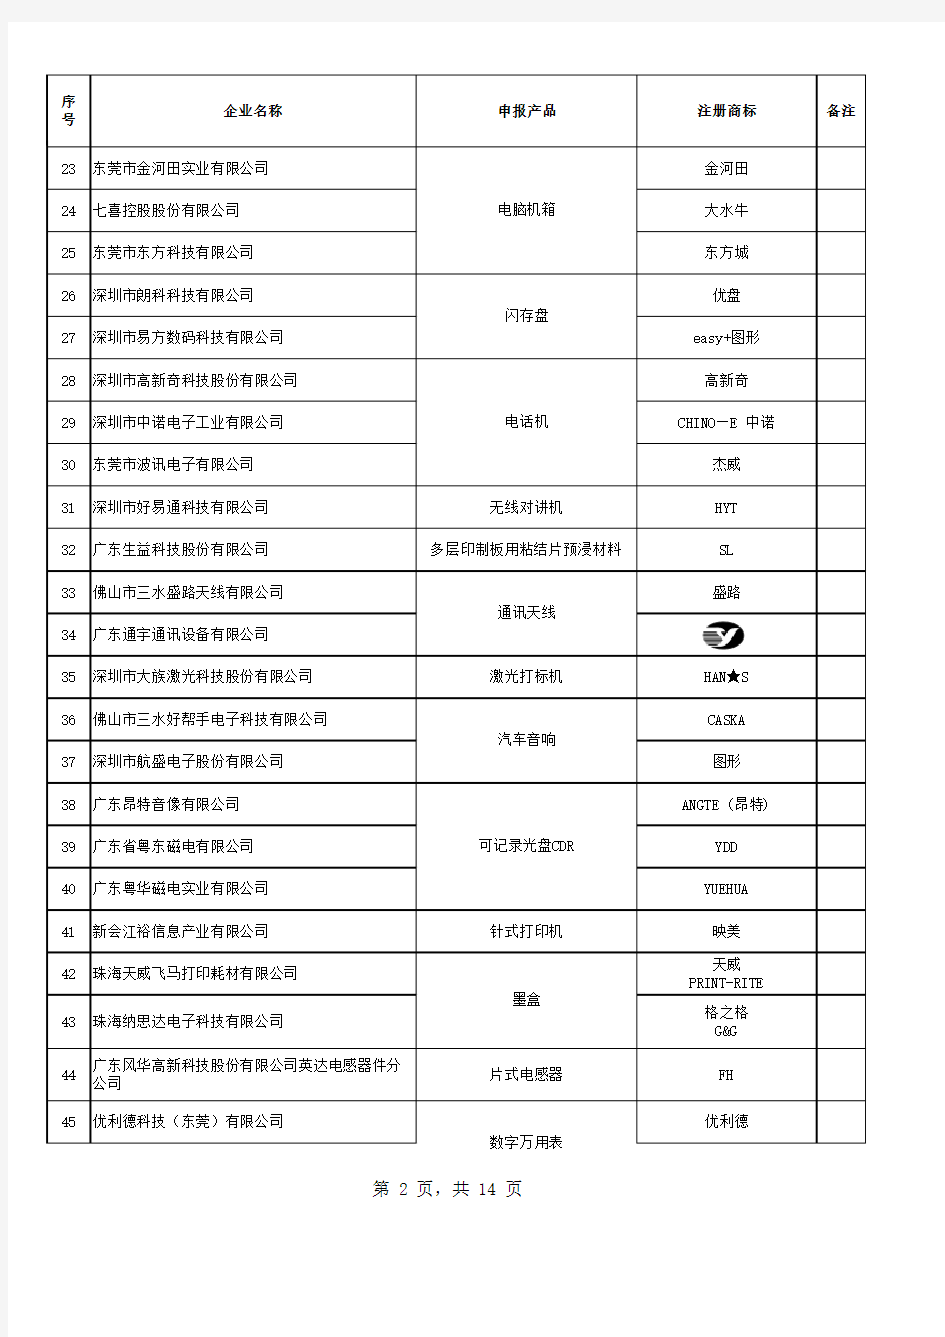 广东省名牌产品初选名单企业名称申报产品注册商标